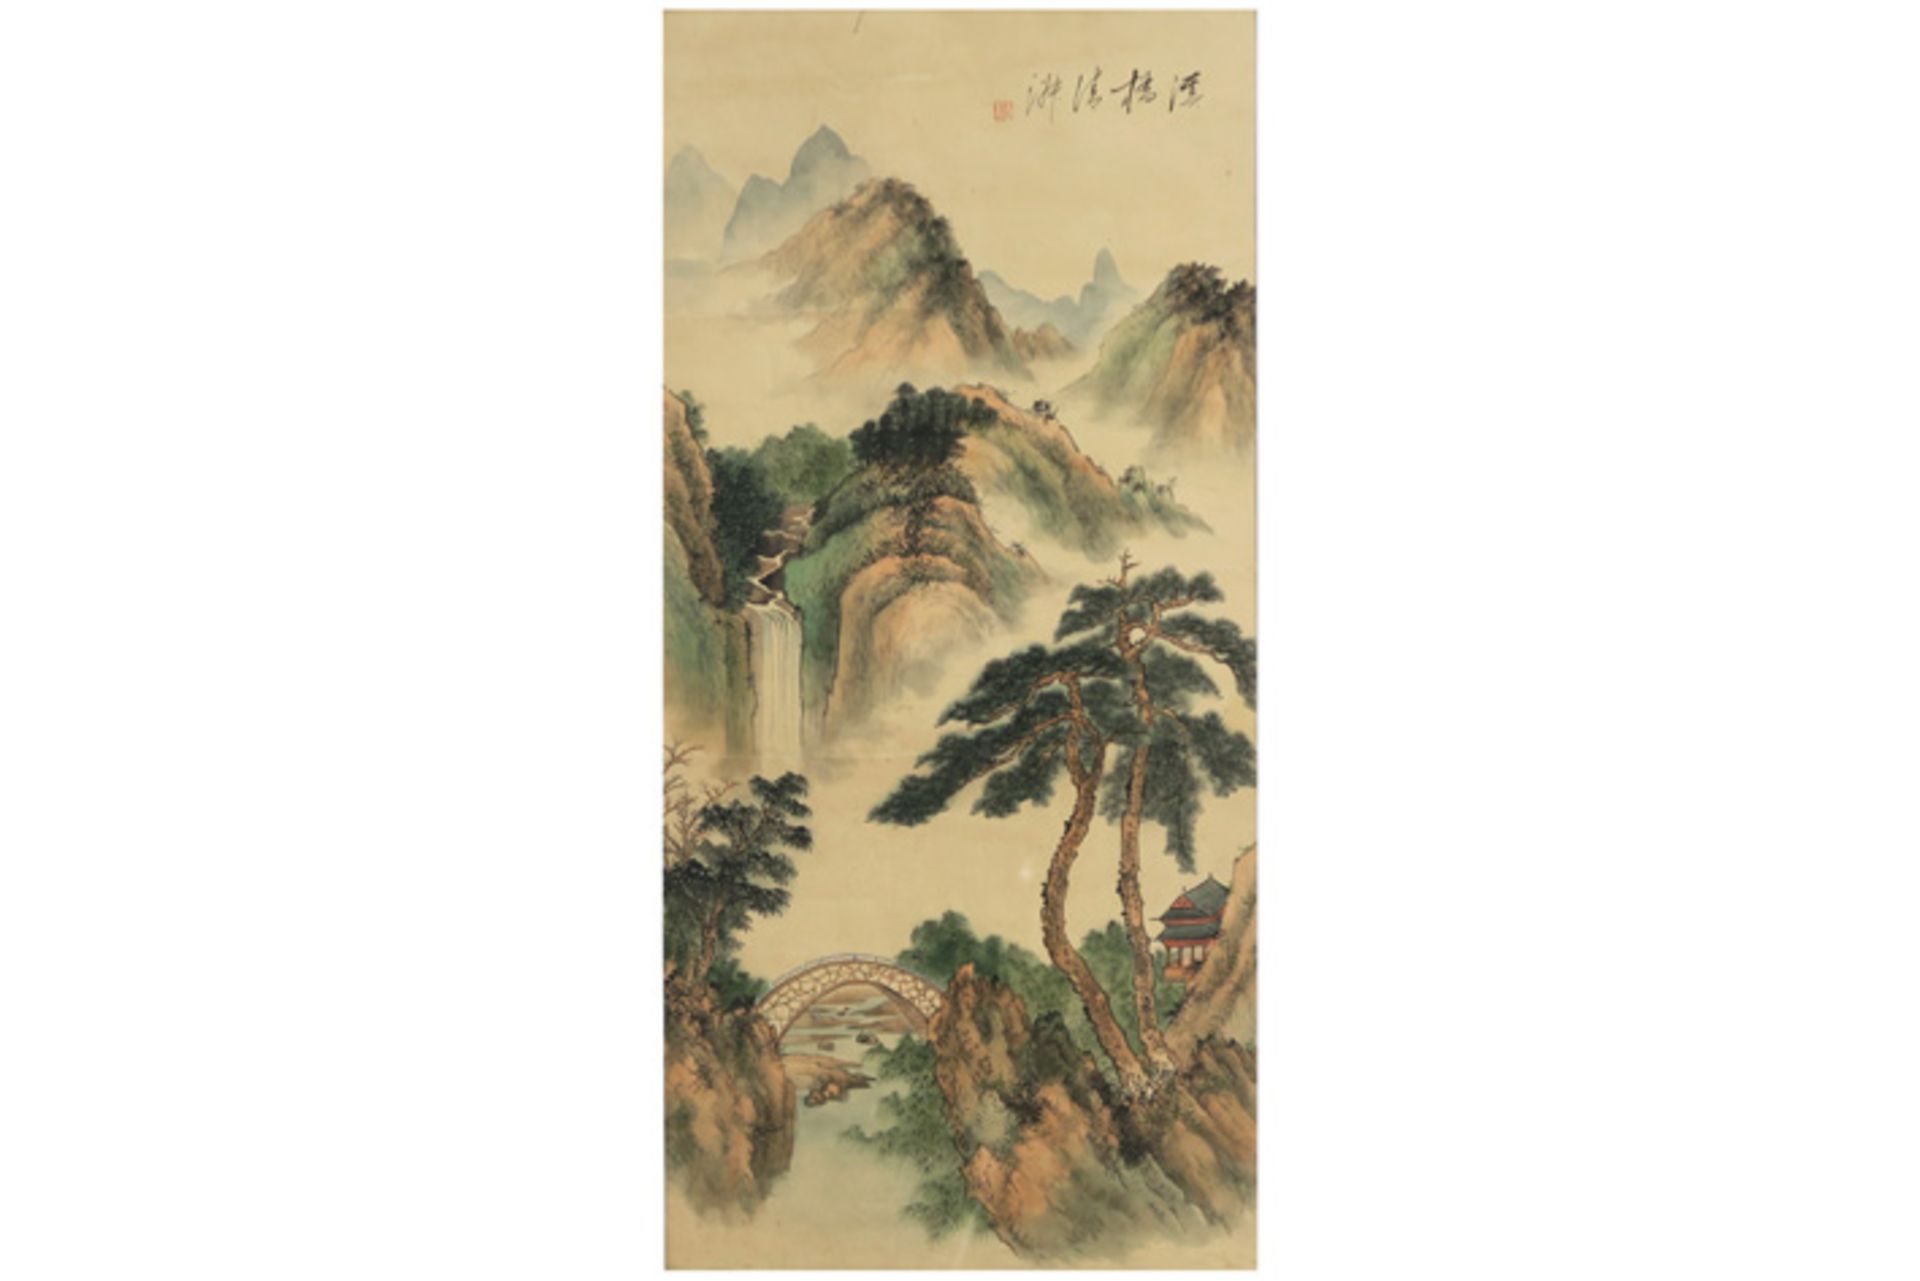 Chinese aquarelle || Chinese aquarel met berglandschap - 66,5 x 31,5